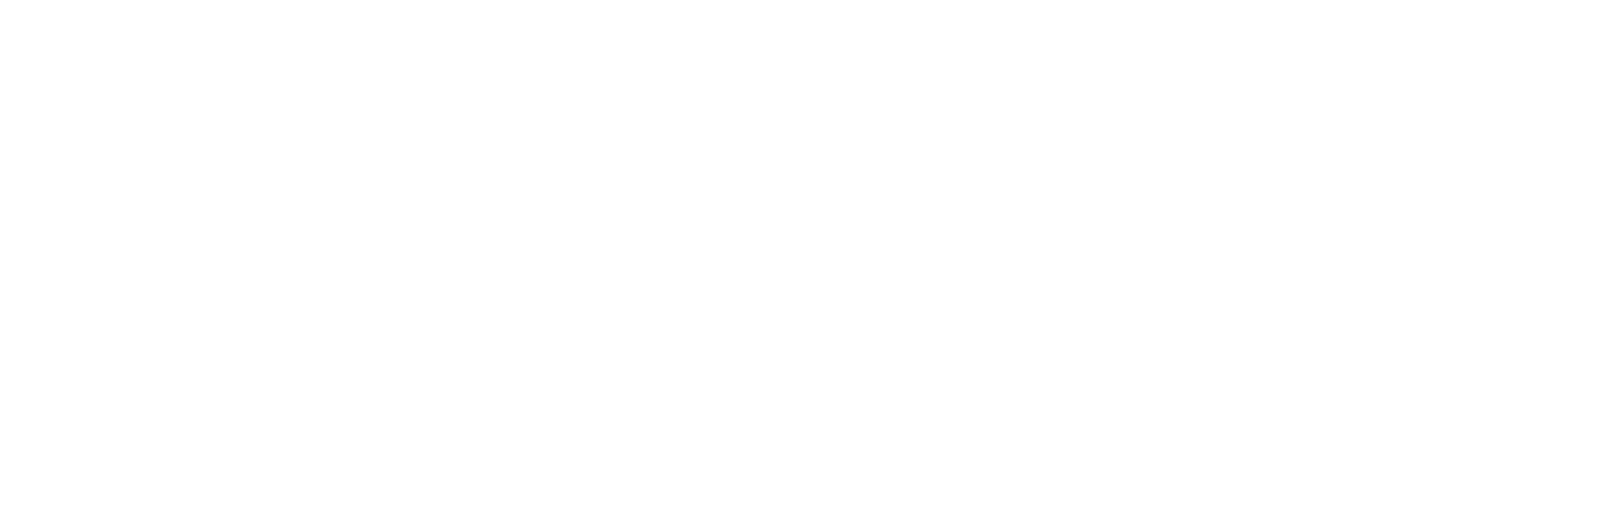 JPMorgan Asset Management logo large for dark backgrounds (transparent PNG)